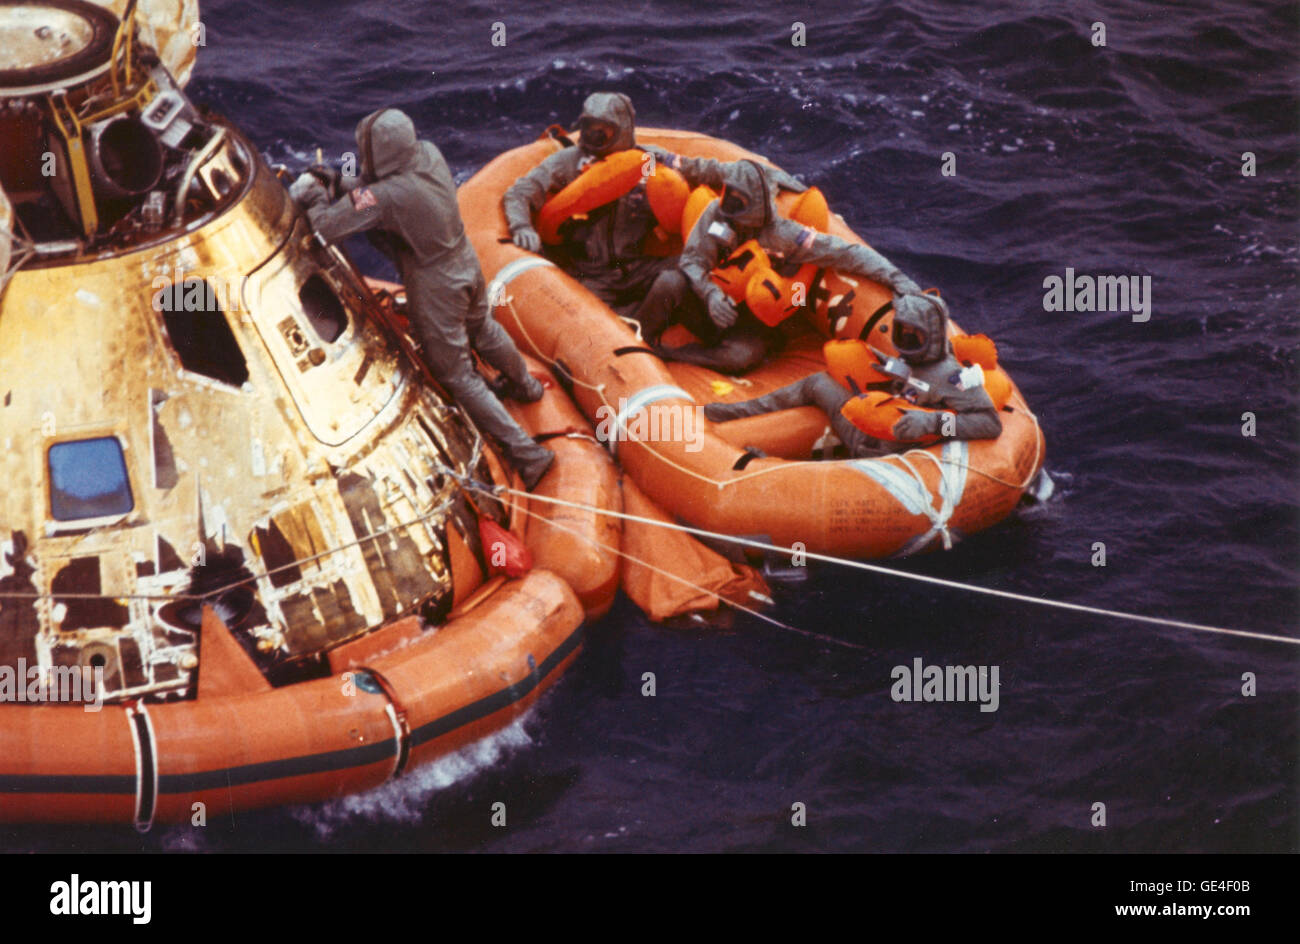 (24 Juli 1969) Pararescueman Lt. Clancy Hatleberg schließt die Apollo 11 Raumschiff Luke als Astronauten Neil Armstrong, Michael Collins und Buzz Aldrin, Jr., Hubschrauber Abholung ihre Rettungsinsel erwarten. Sie wasserte um 12:50 Uhr MESZ 24. Juli 1969, 900 Meilen südwestlich von Hawaii nach einer erfolgreichen Mondlandung Mission.  Bild-Nr.: 108-KSC-69PC-452 Stockfoto